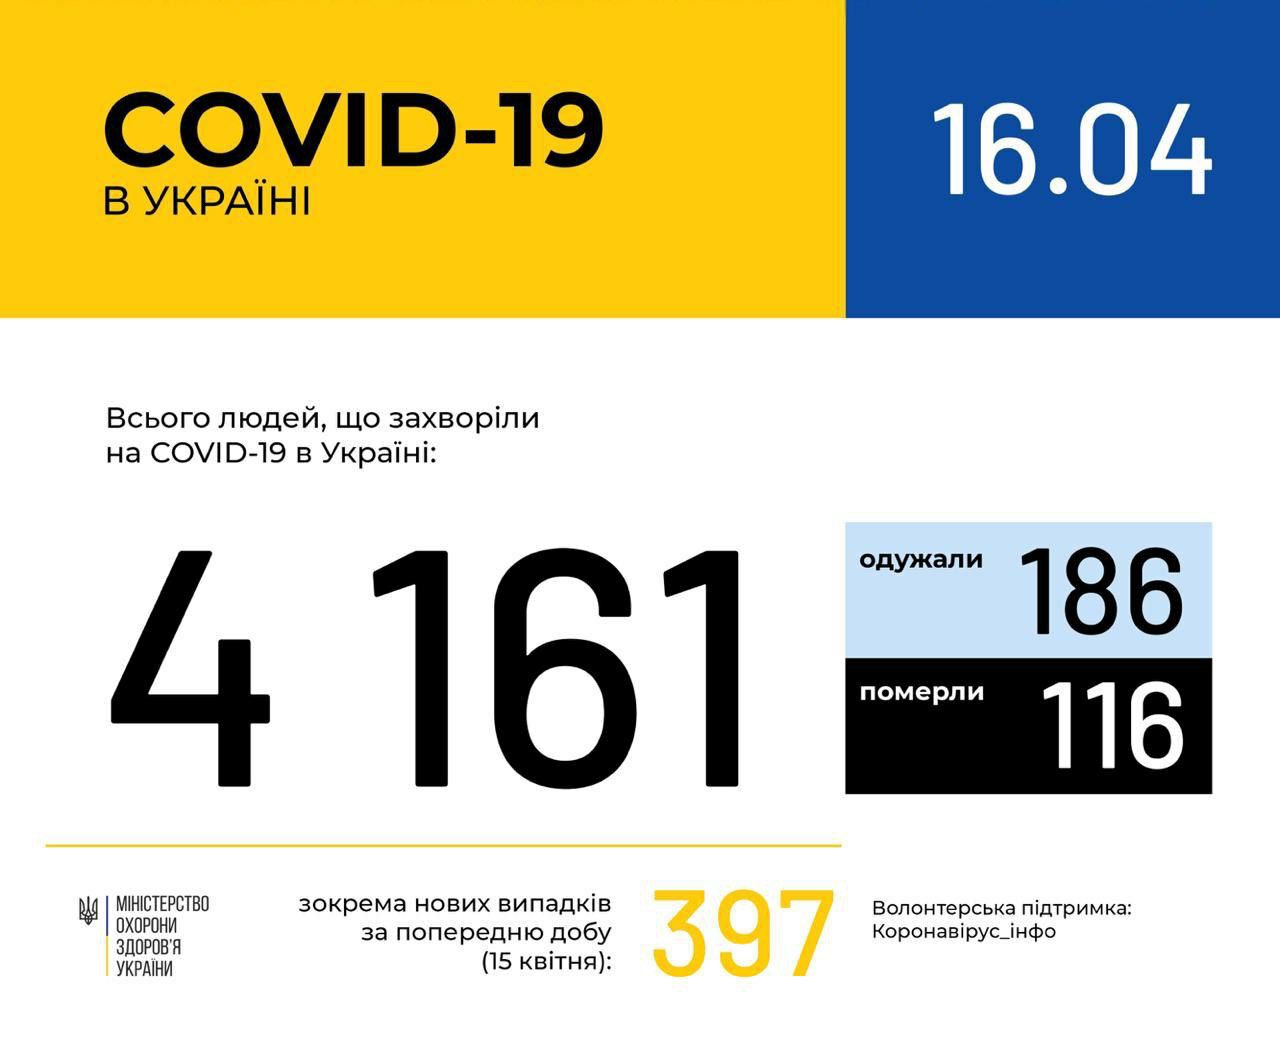 В Украине зафиксировано 4 161 случай коронавирусной болезни COVID-19